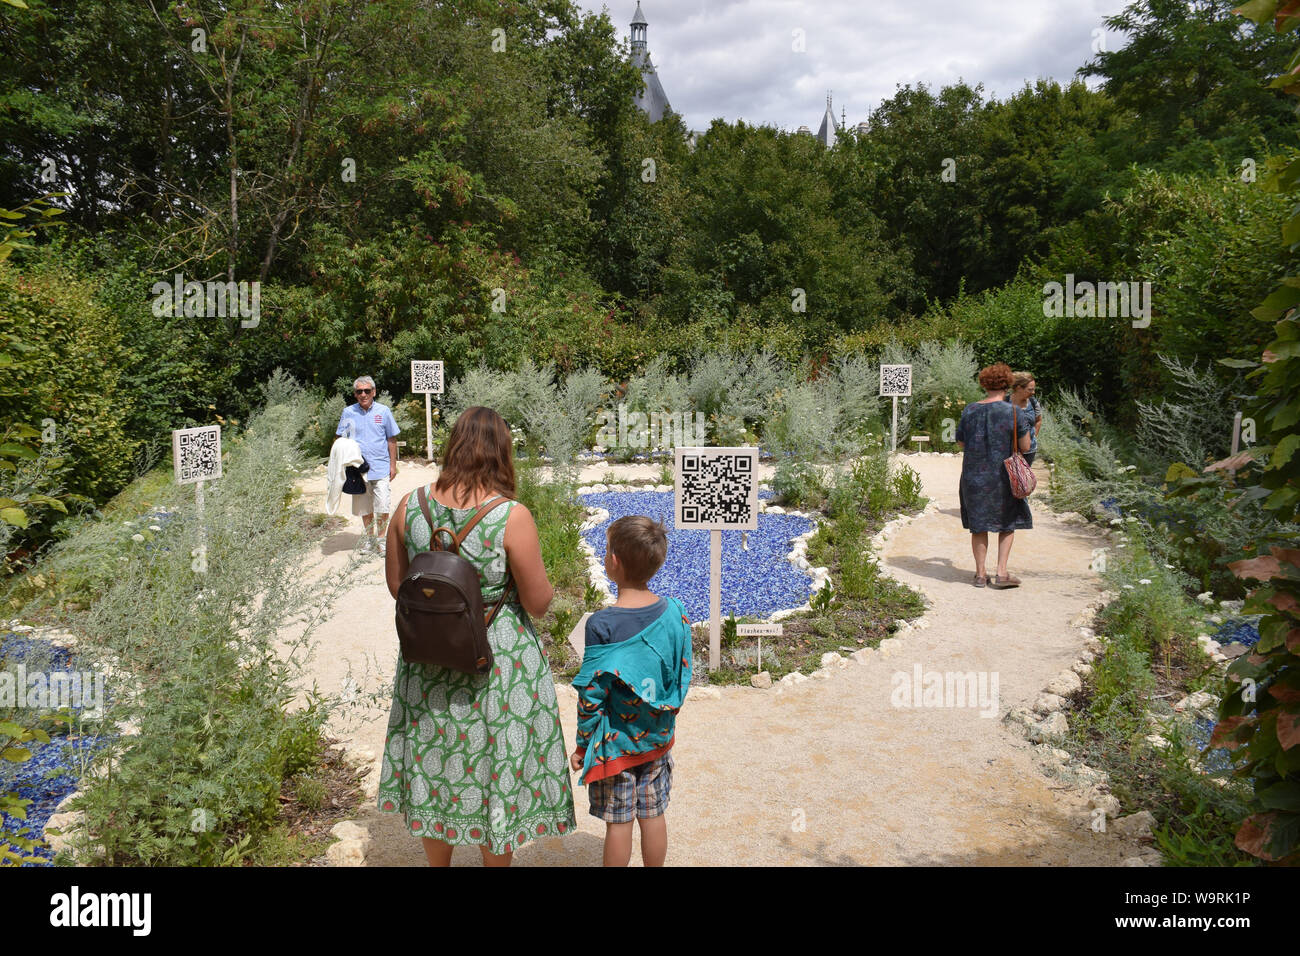 Au-dela des nuages garden explores relationship between nature & digital, International Garden Festival, Chaumont-sur-Loire chateau, Loire Valley, Fra Stock Photo